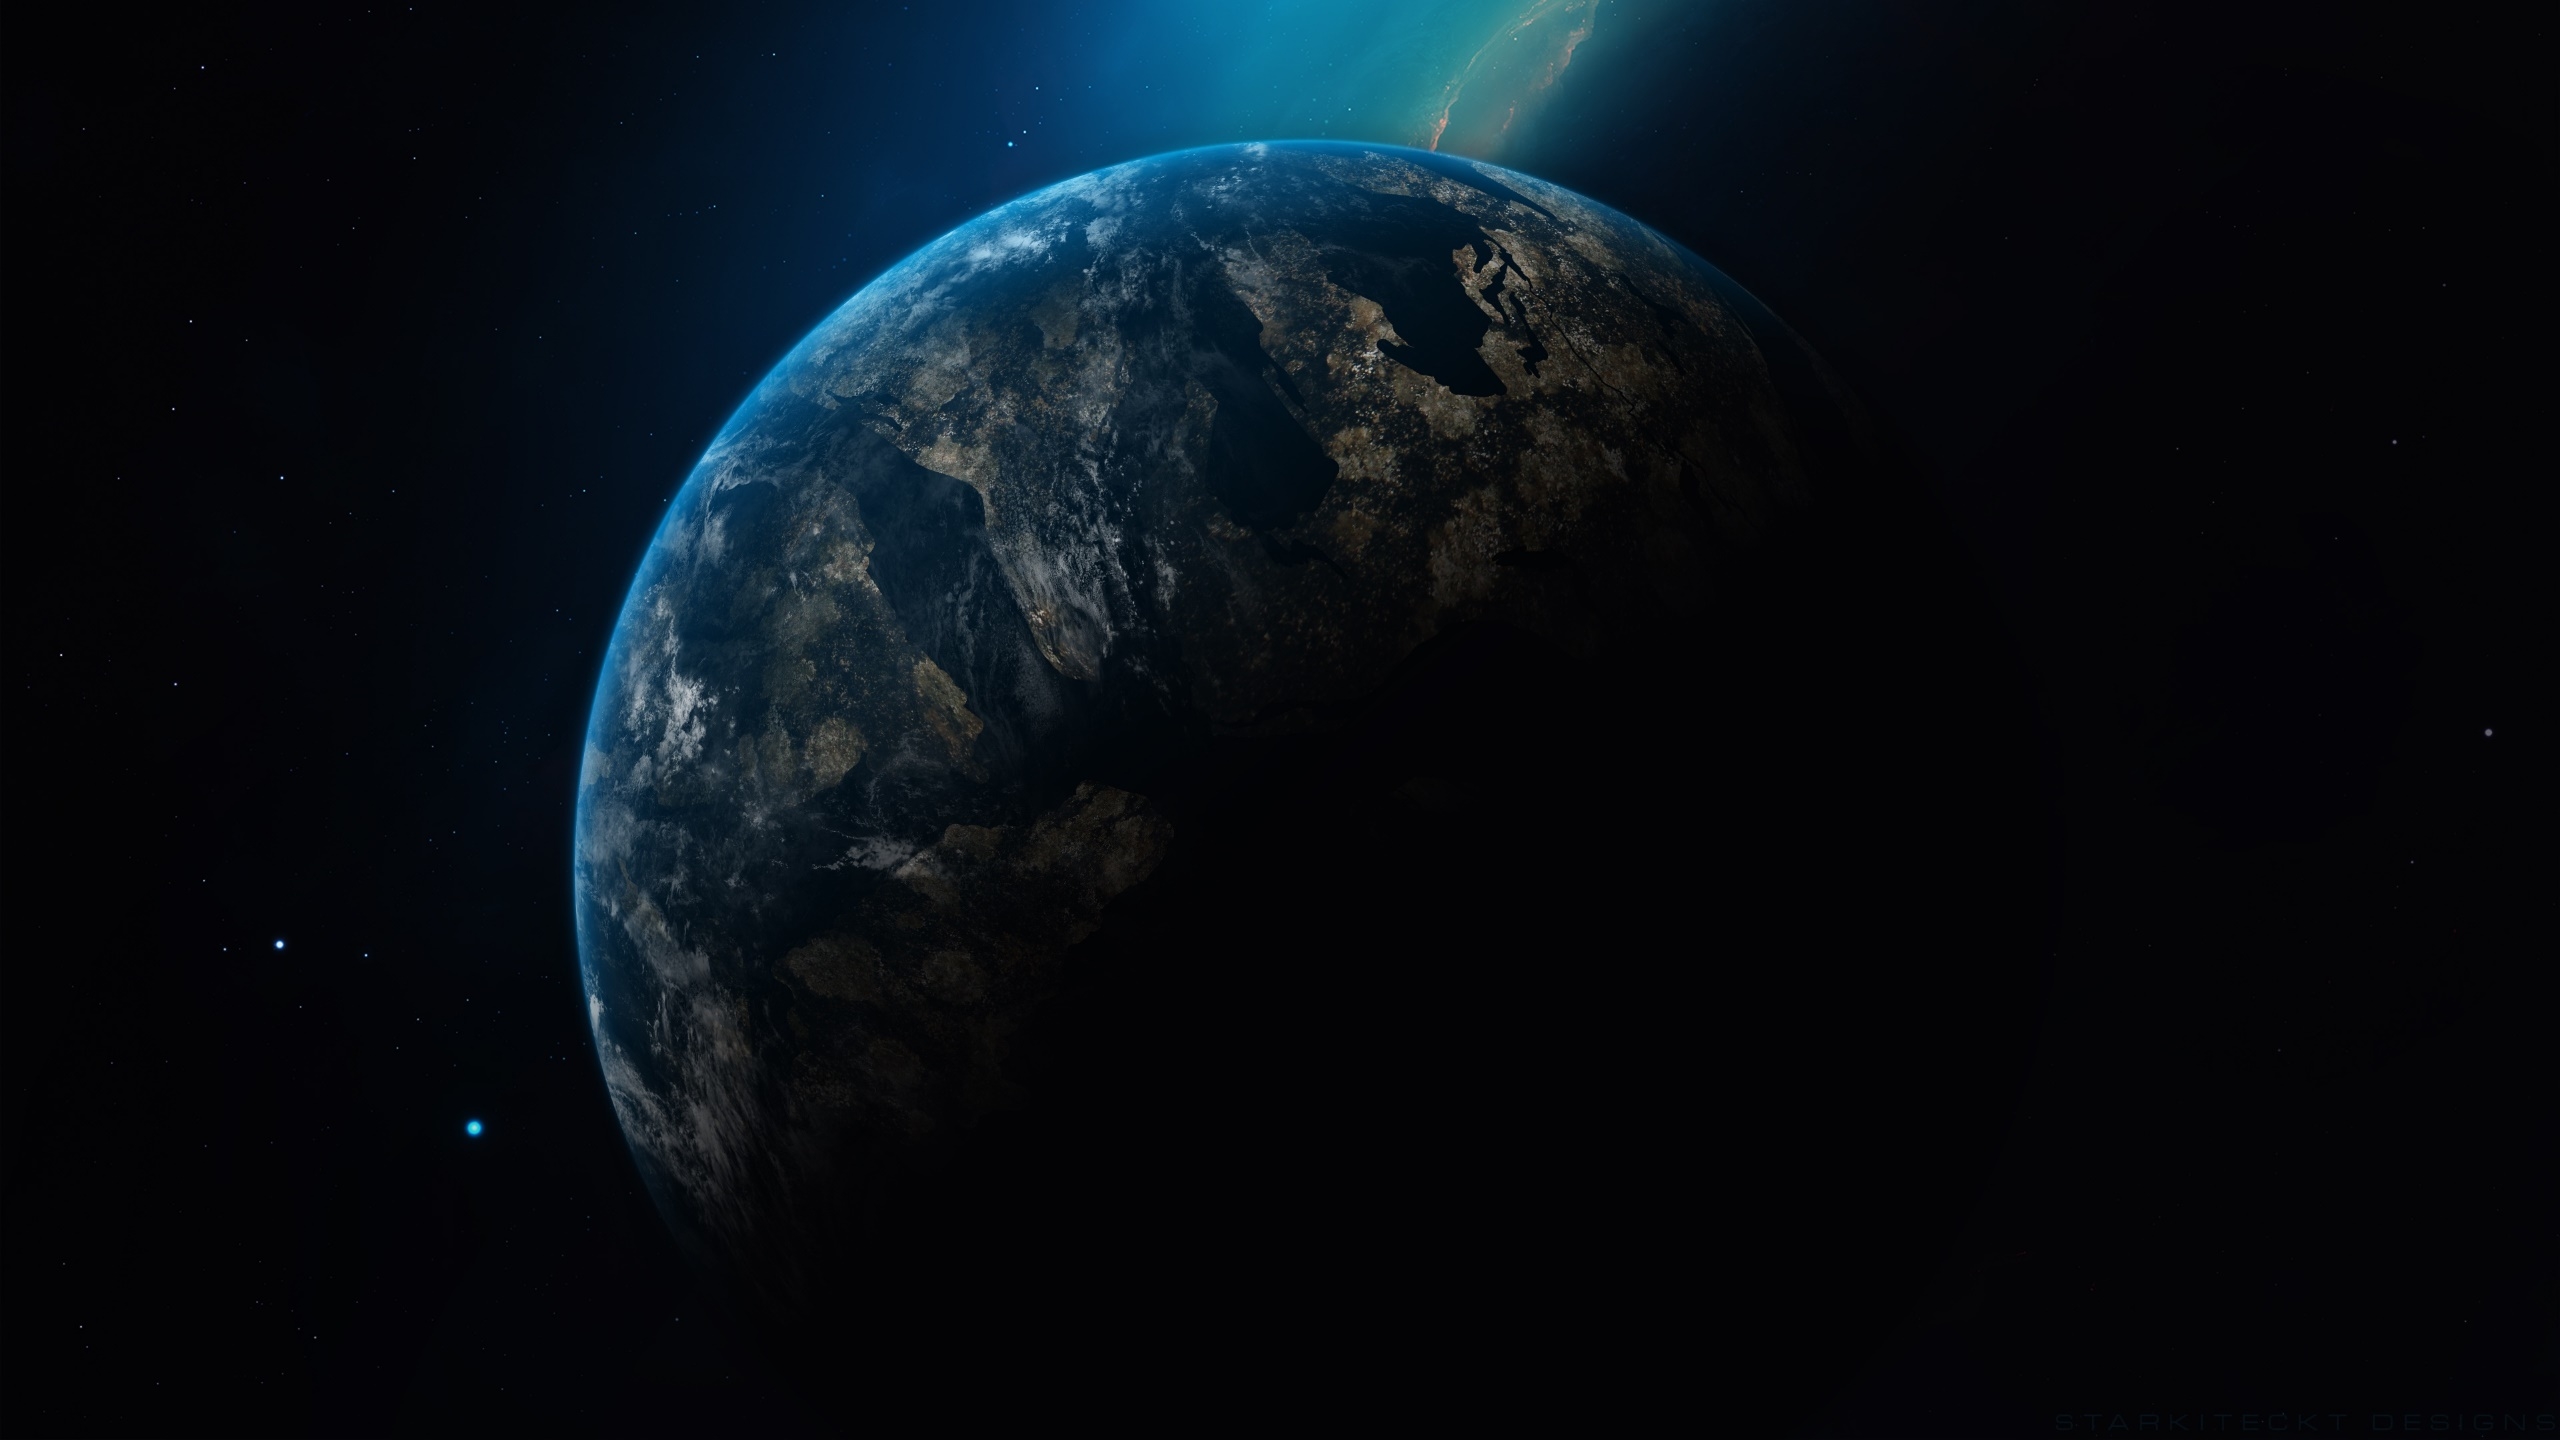 Planet Earth in Dark  Universe  Wallpaper  HD  Space 4K 